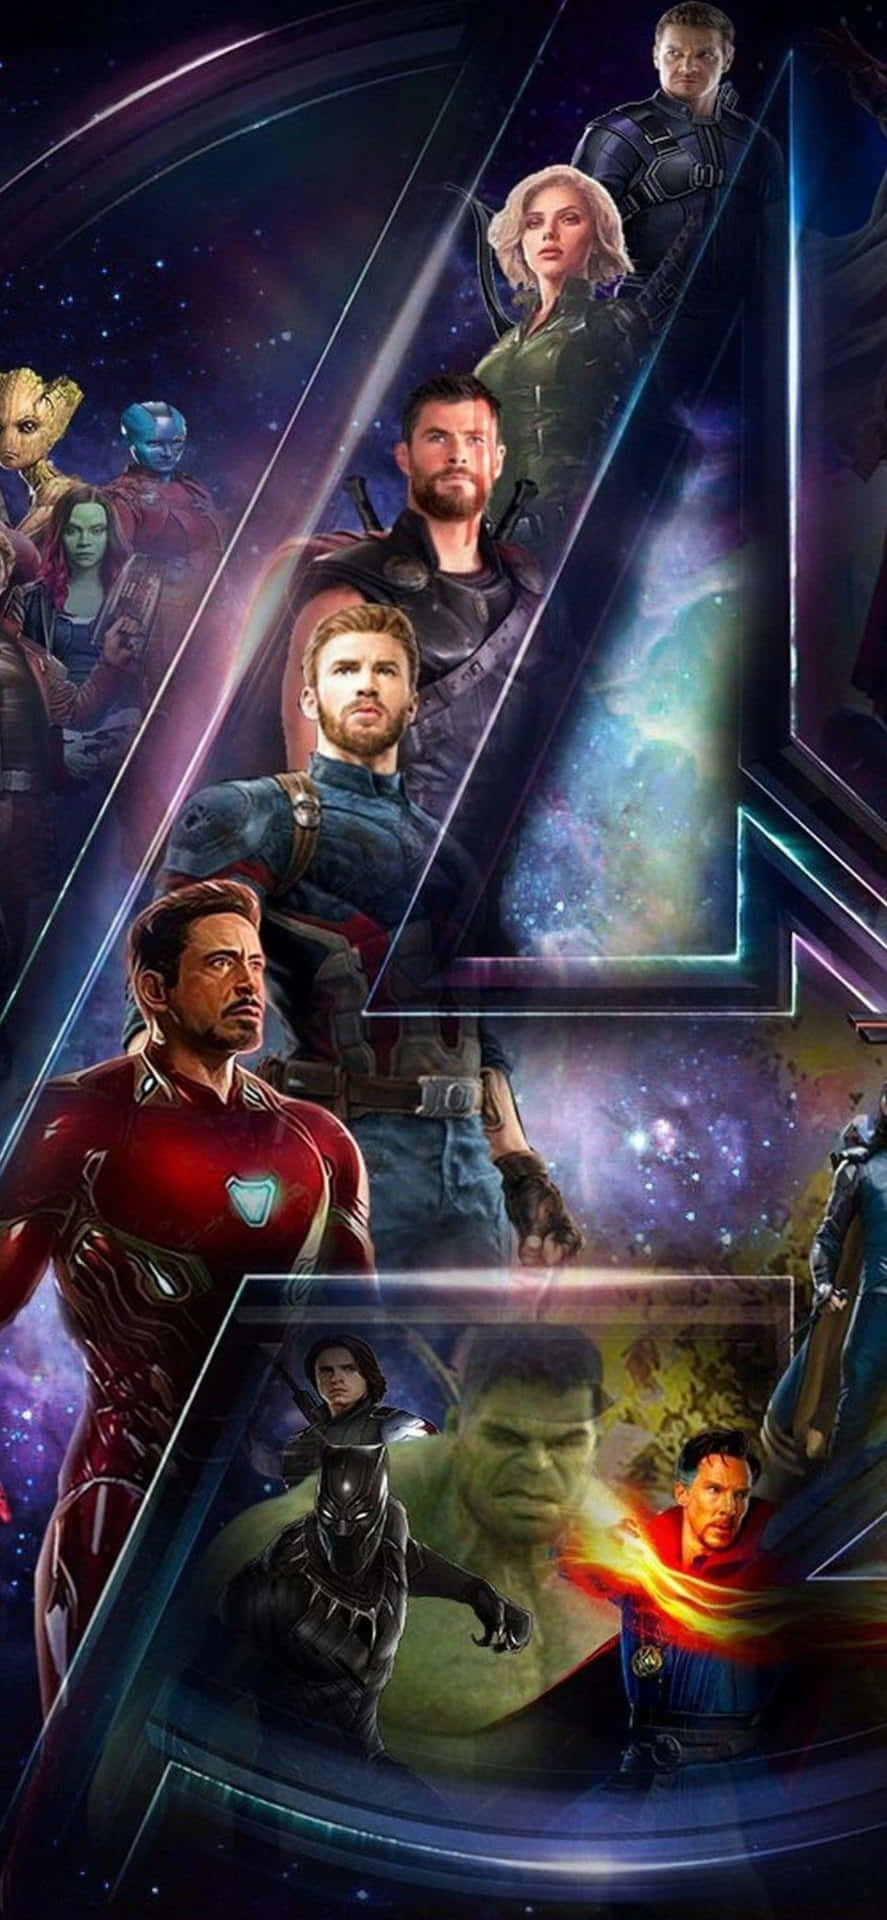 Iphonexs Bakgrundsbild Med Avengers-logotypen Och Marvel-hjältarna.